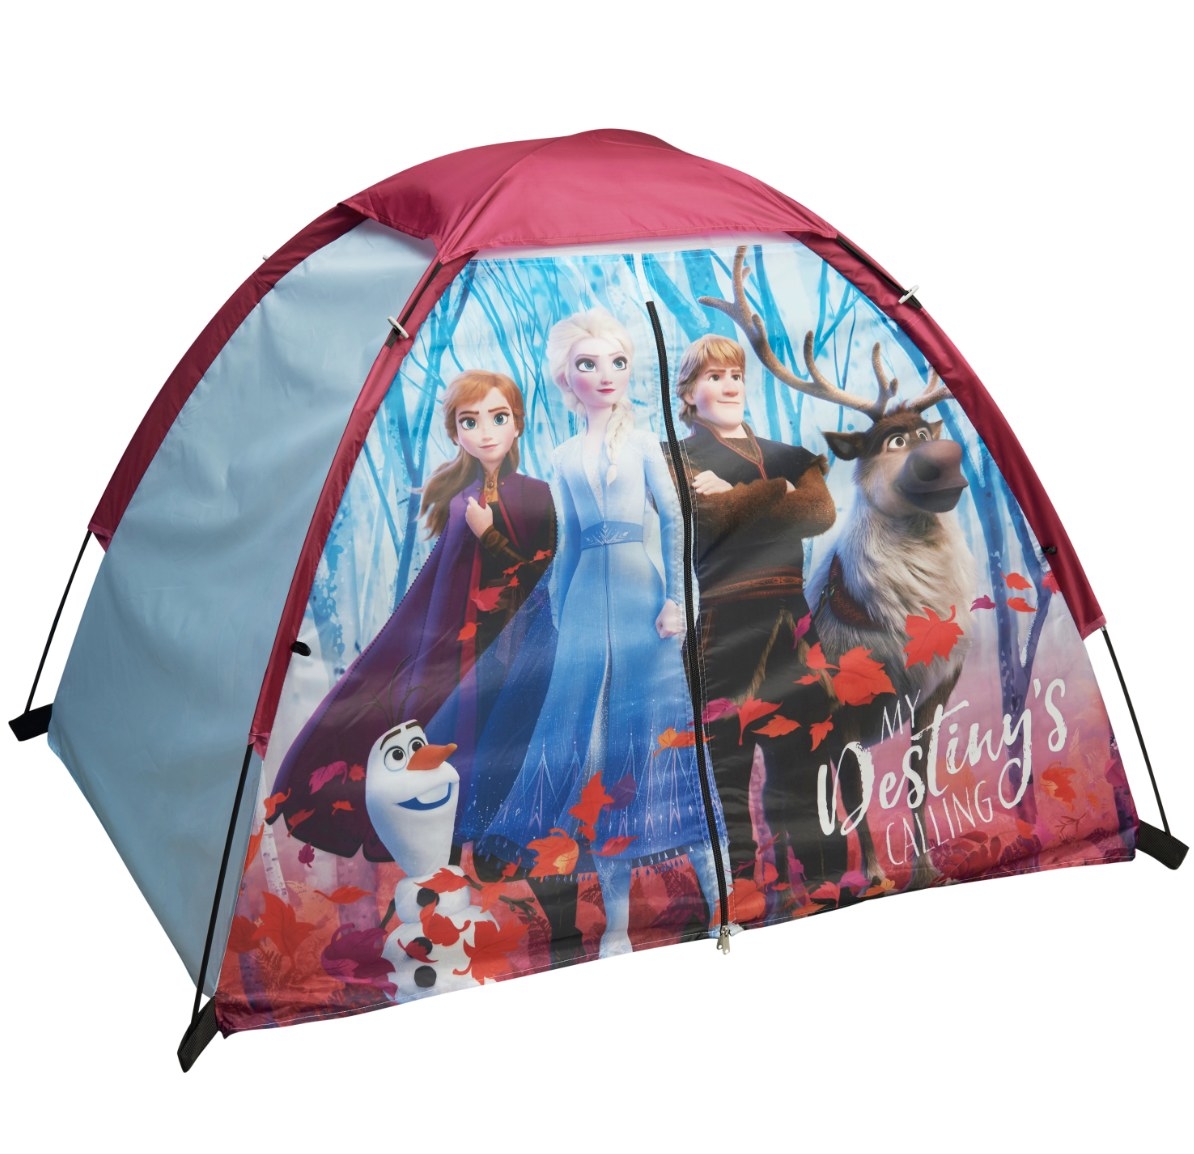 The Disney Frozen tent